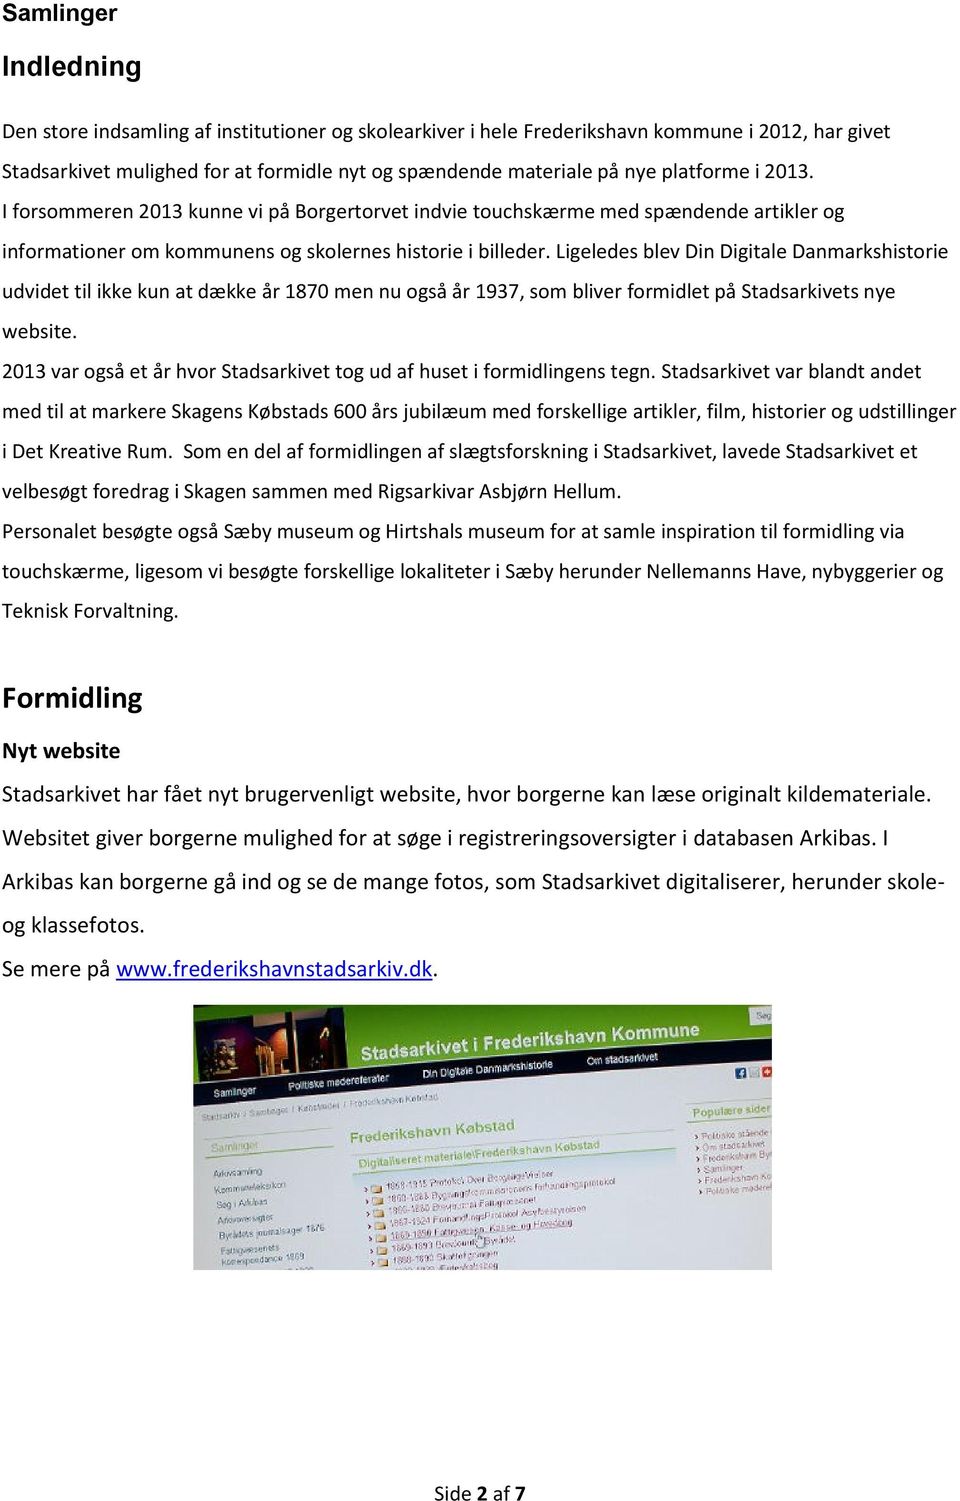 Ligeledes blev Din Digitale Danmarkshistorie udvidet til ikke kun at dække år 1870 men nu også år 1937, som bliver formidlet på Stadsarkivets nye website.